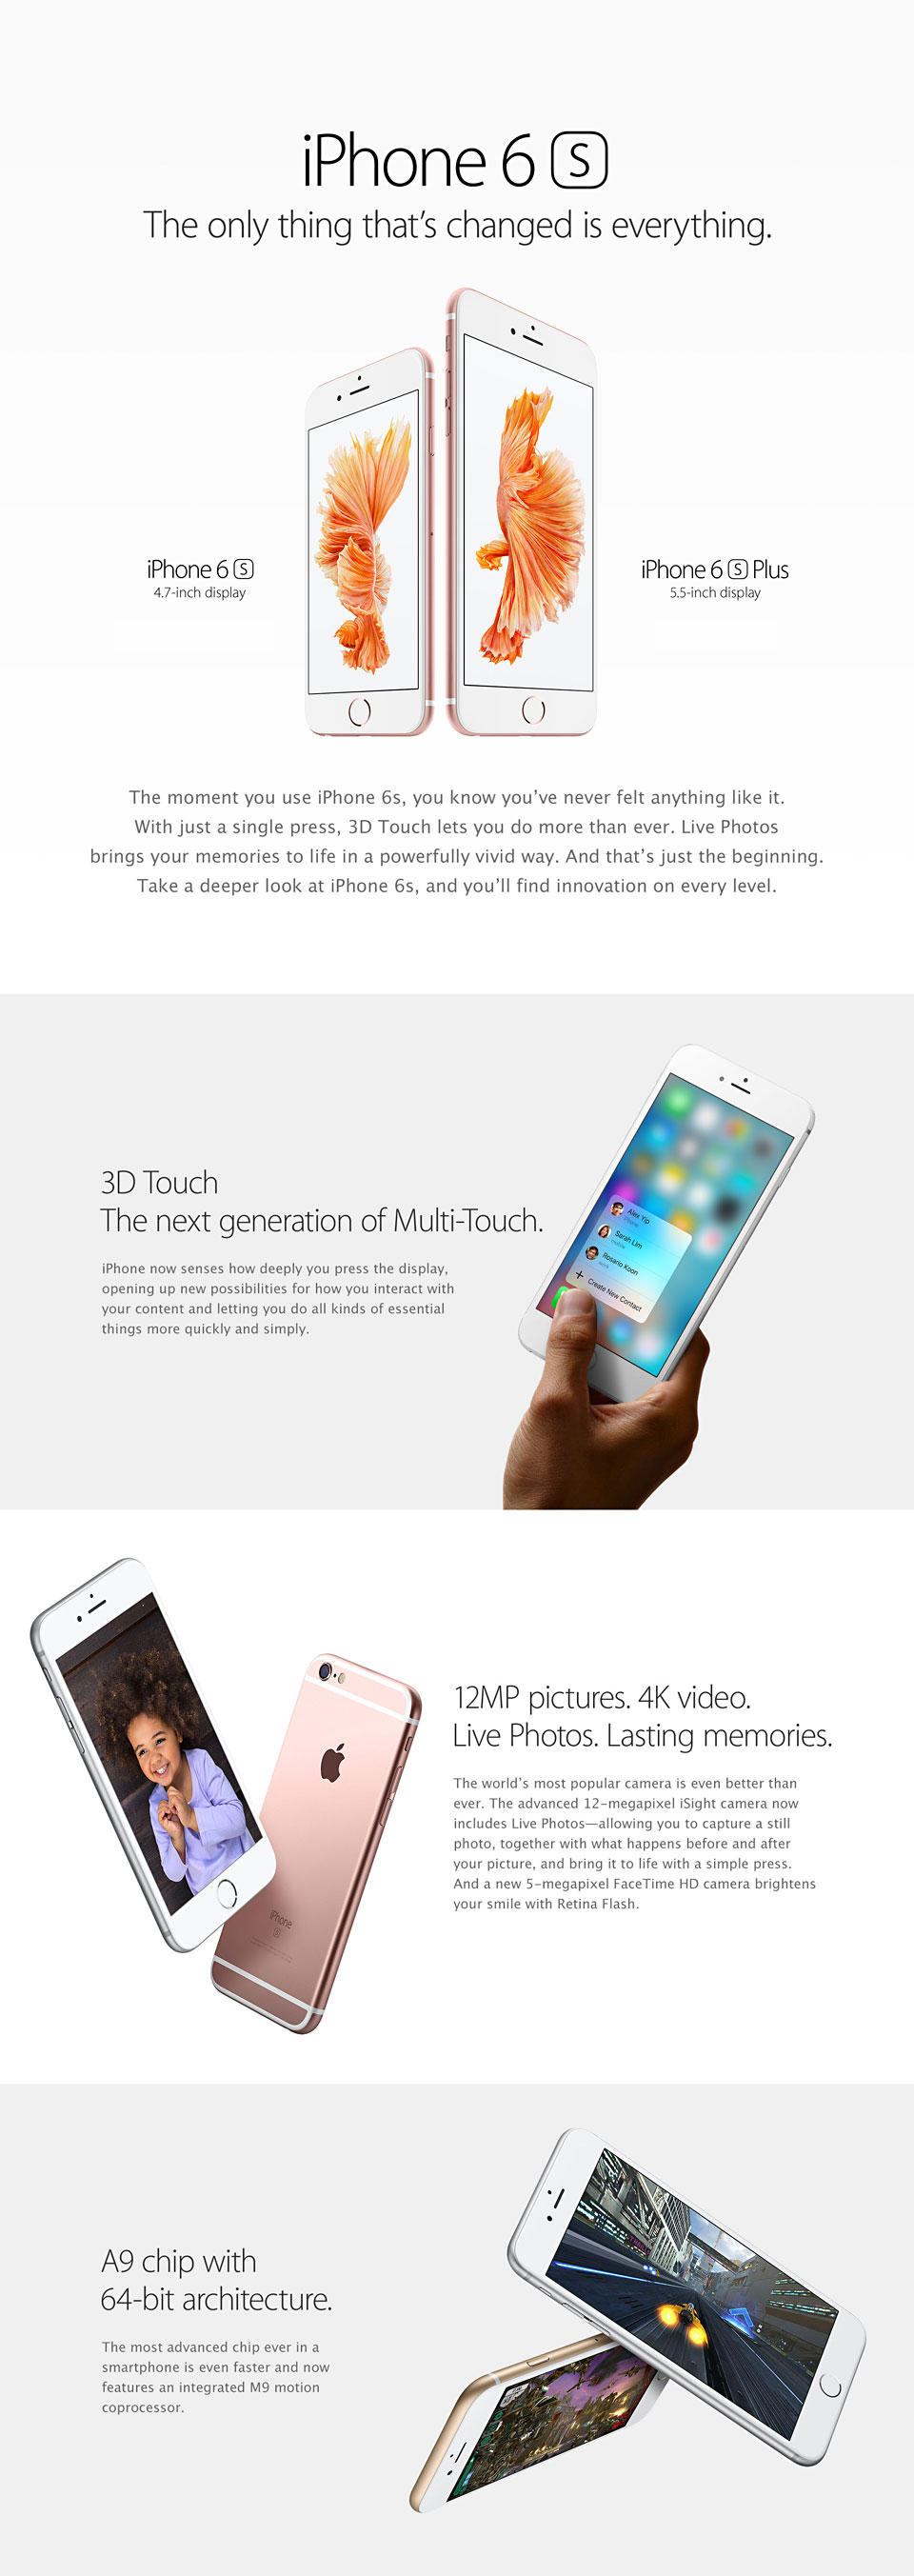 iPhone 6s | iPhone 6s plus